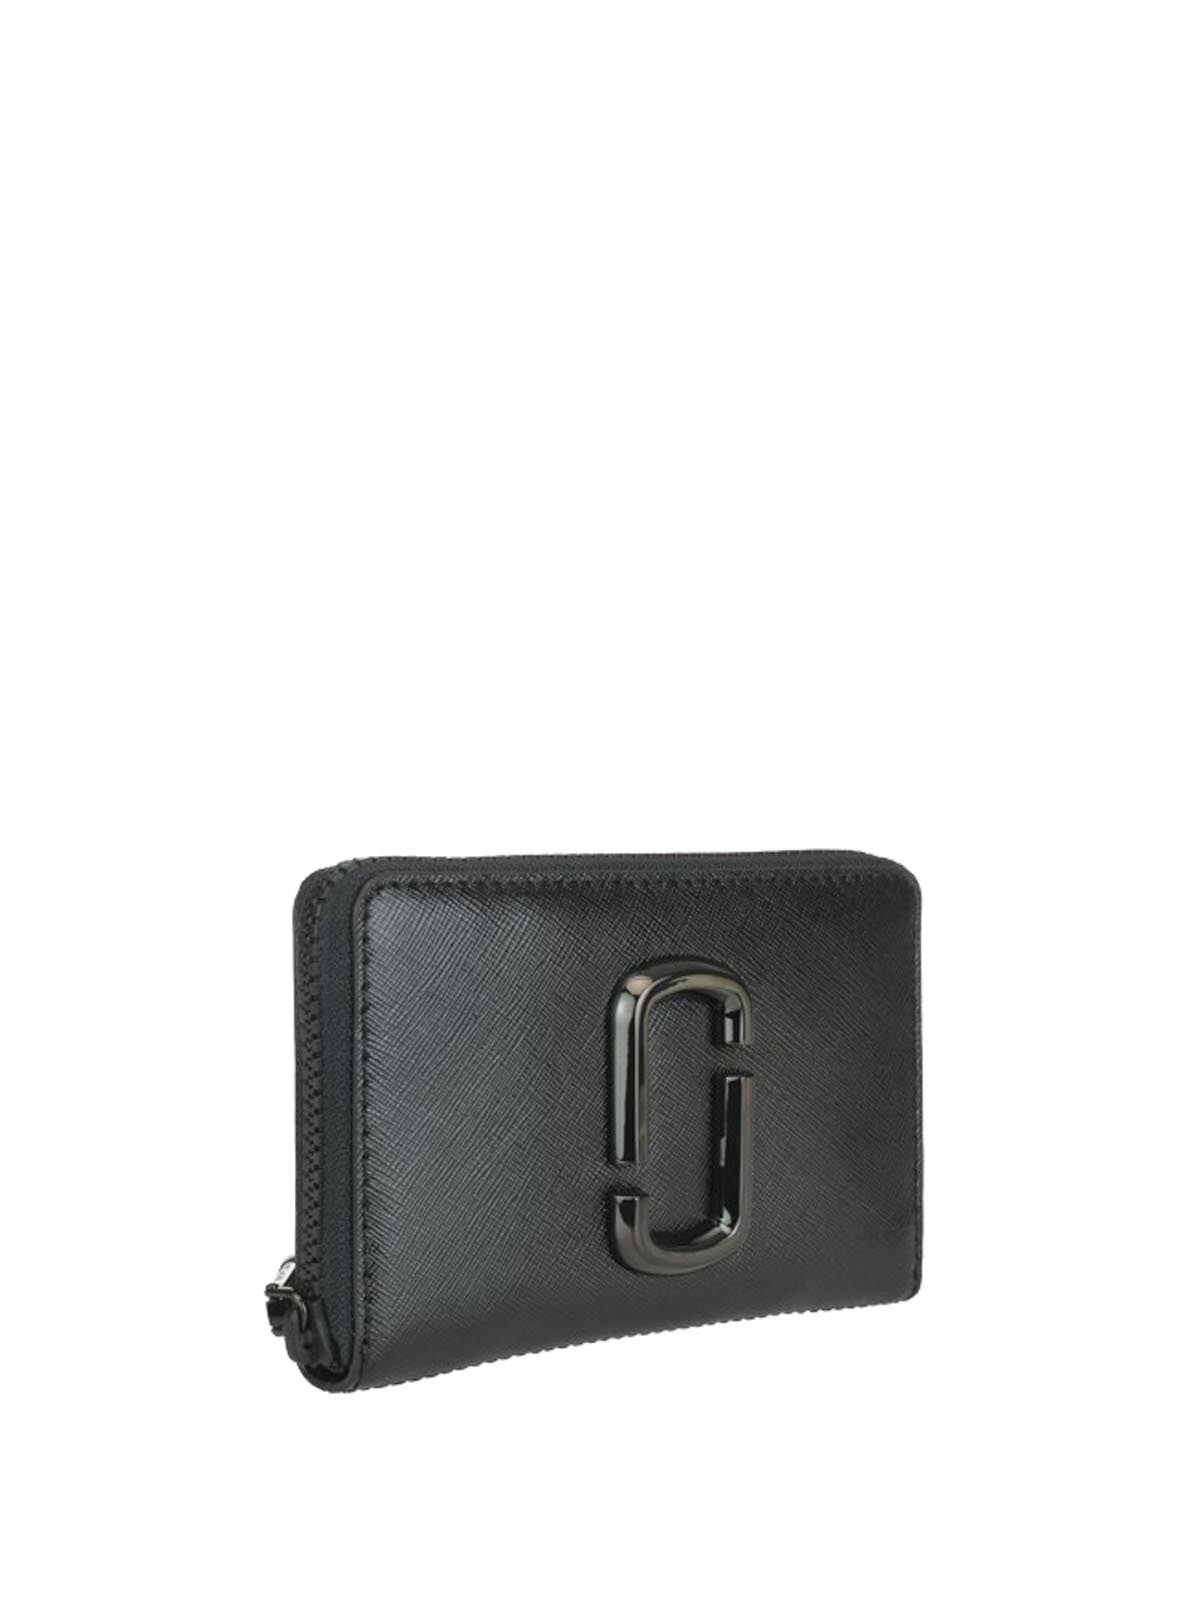 Marc Jacobs Women's Snapshot Dtm Compact Wallet In Black